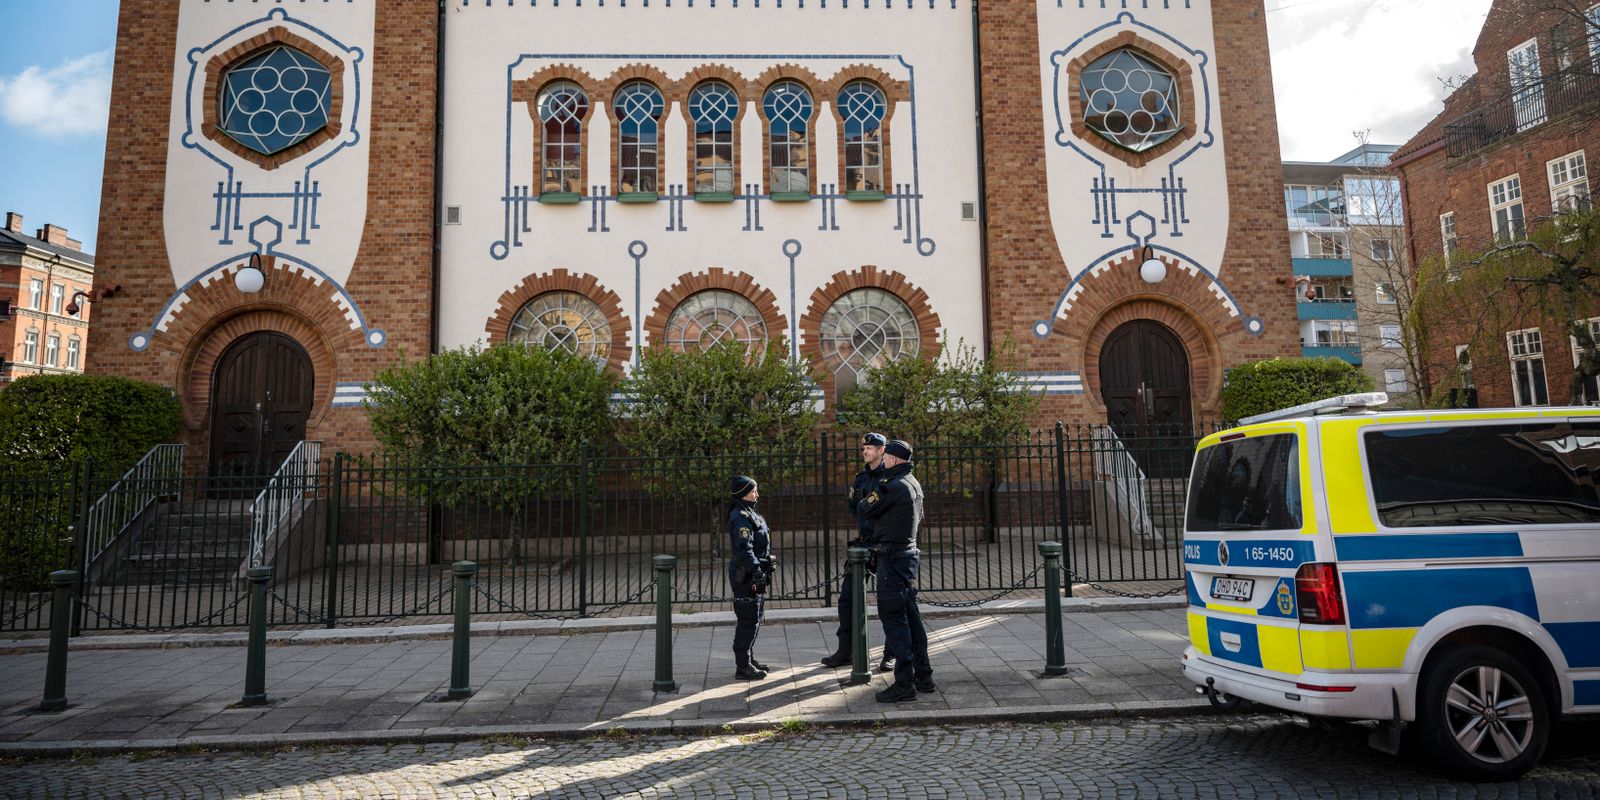 målade hakkors utanför synagogan – man åtalas